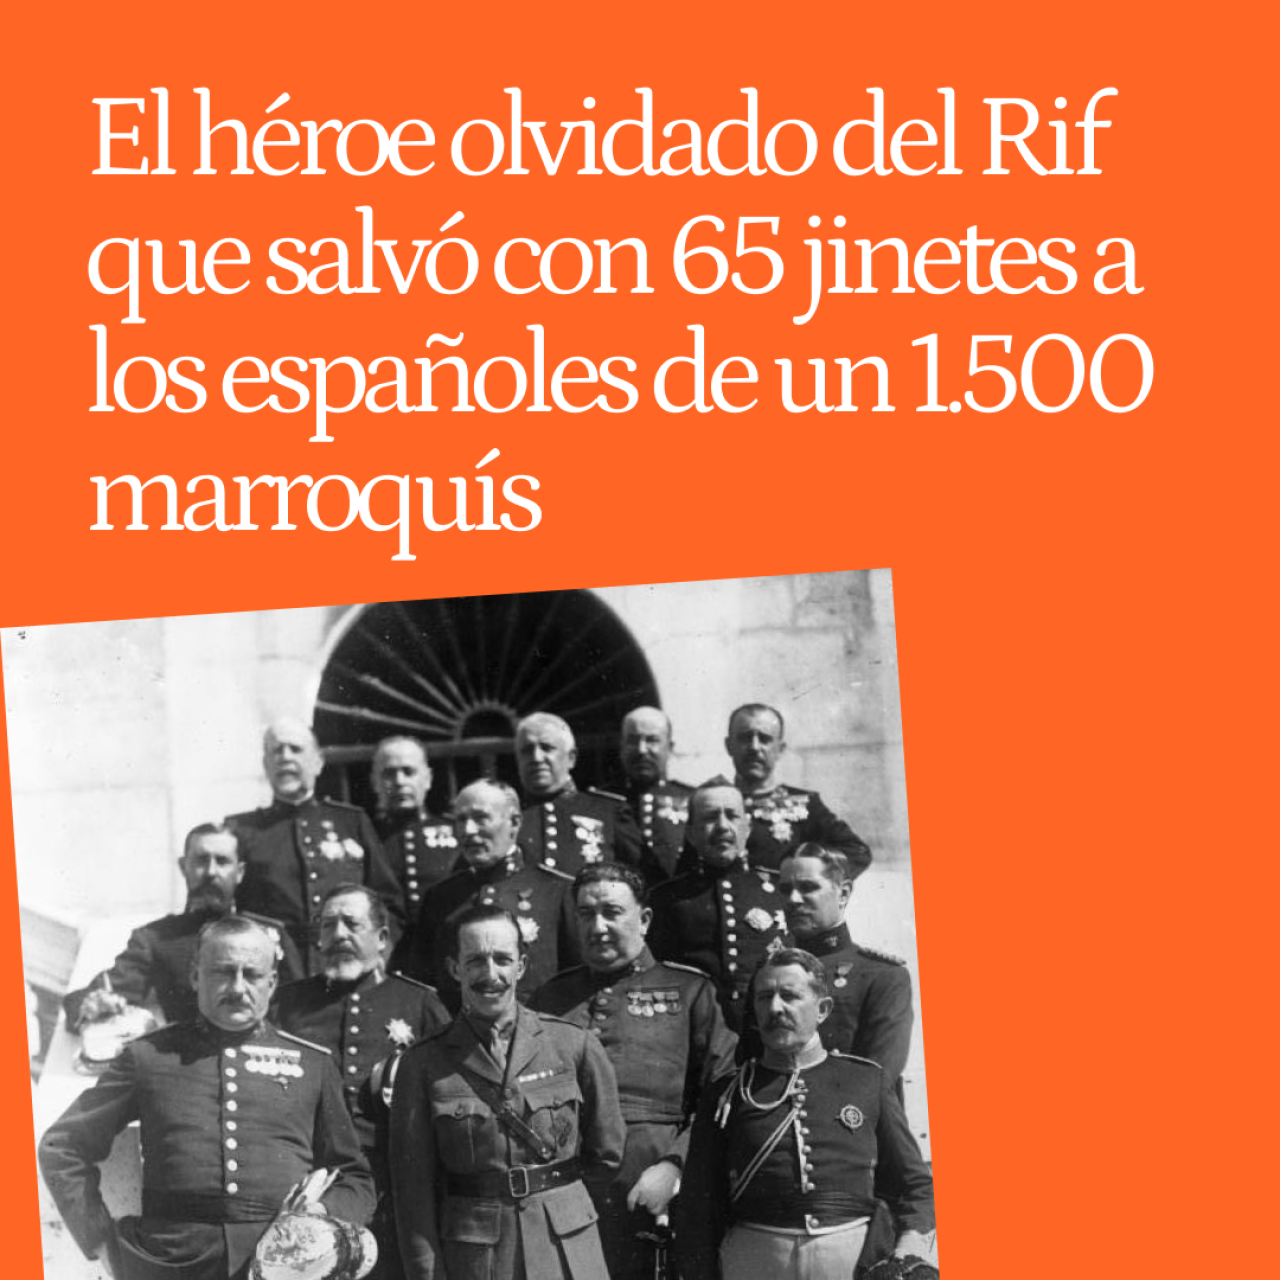 El día que José de Cavalcanti, el héroe olvidado del Rif, salvó a los españoles de un ejército de 1.500 marroquís con 65 jinetes